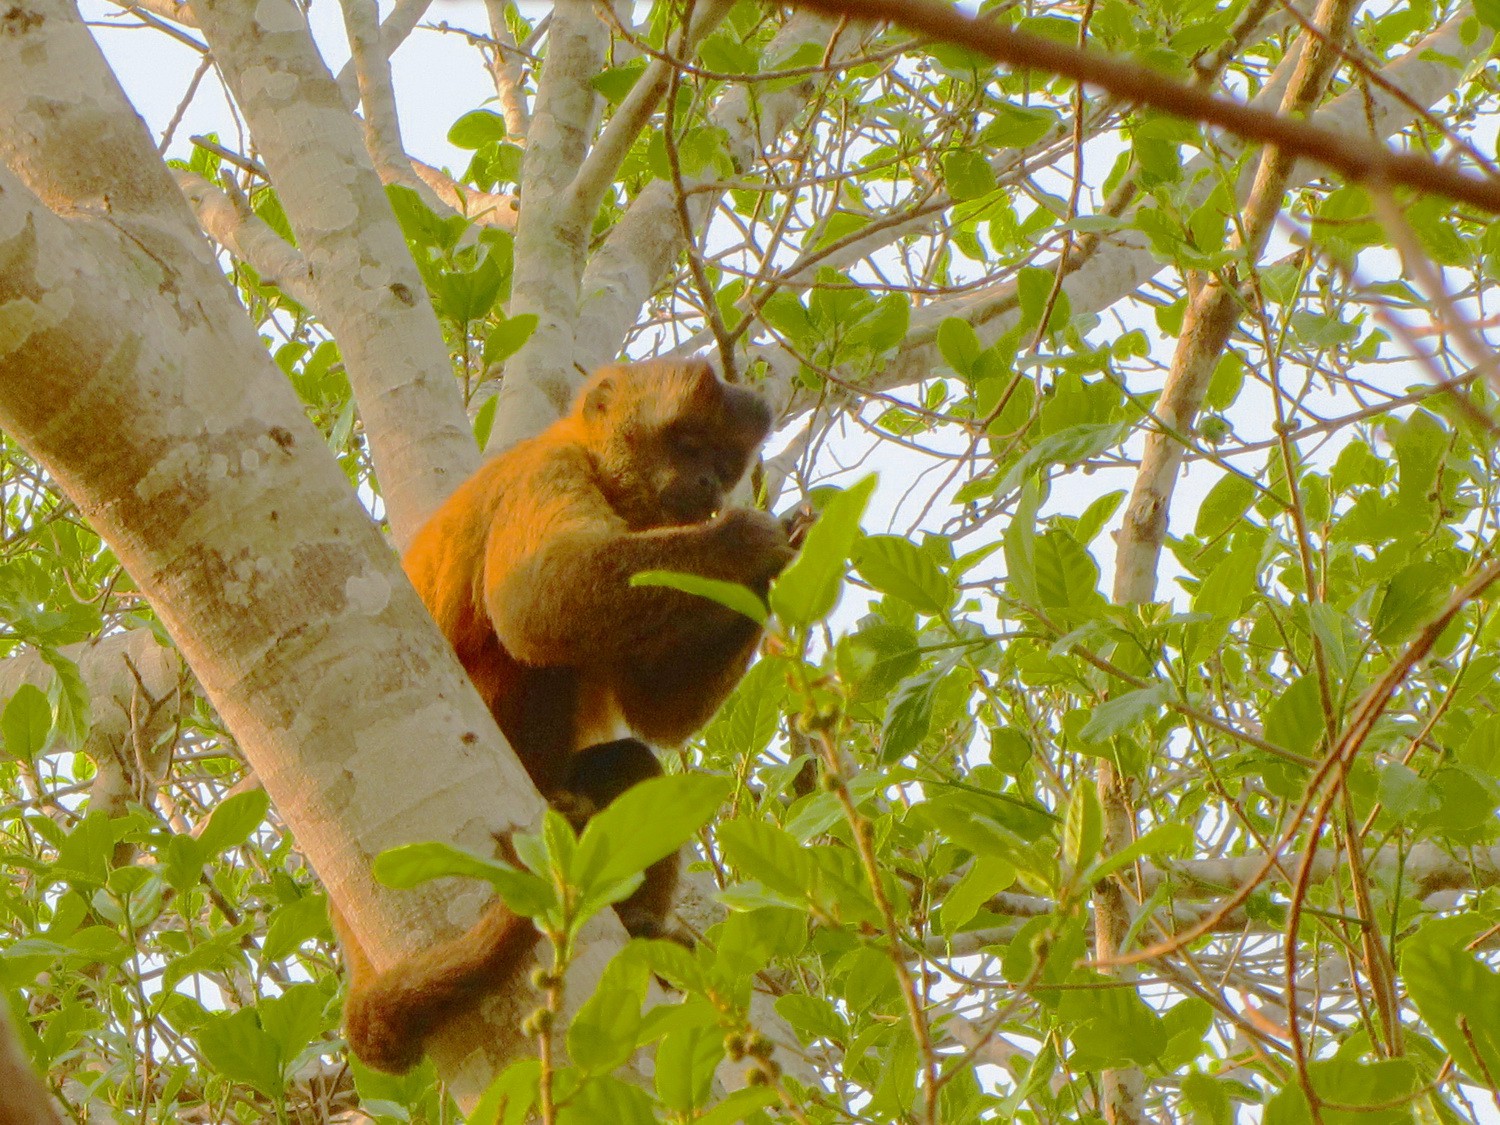 Monkey having breakfast in a tree